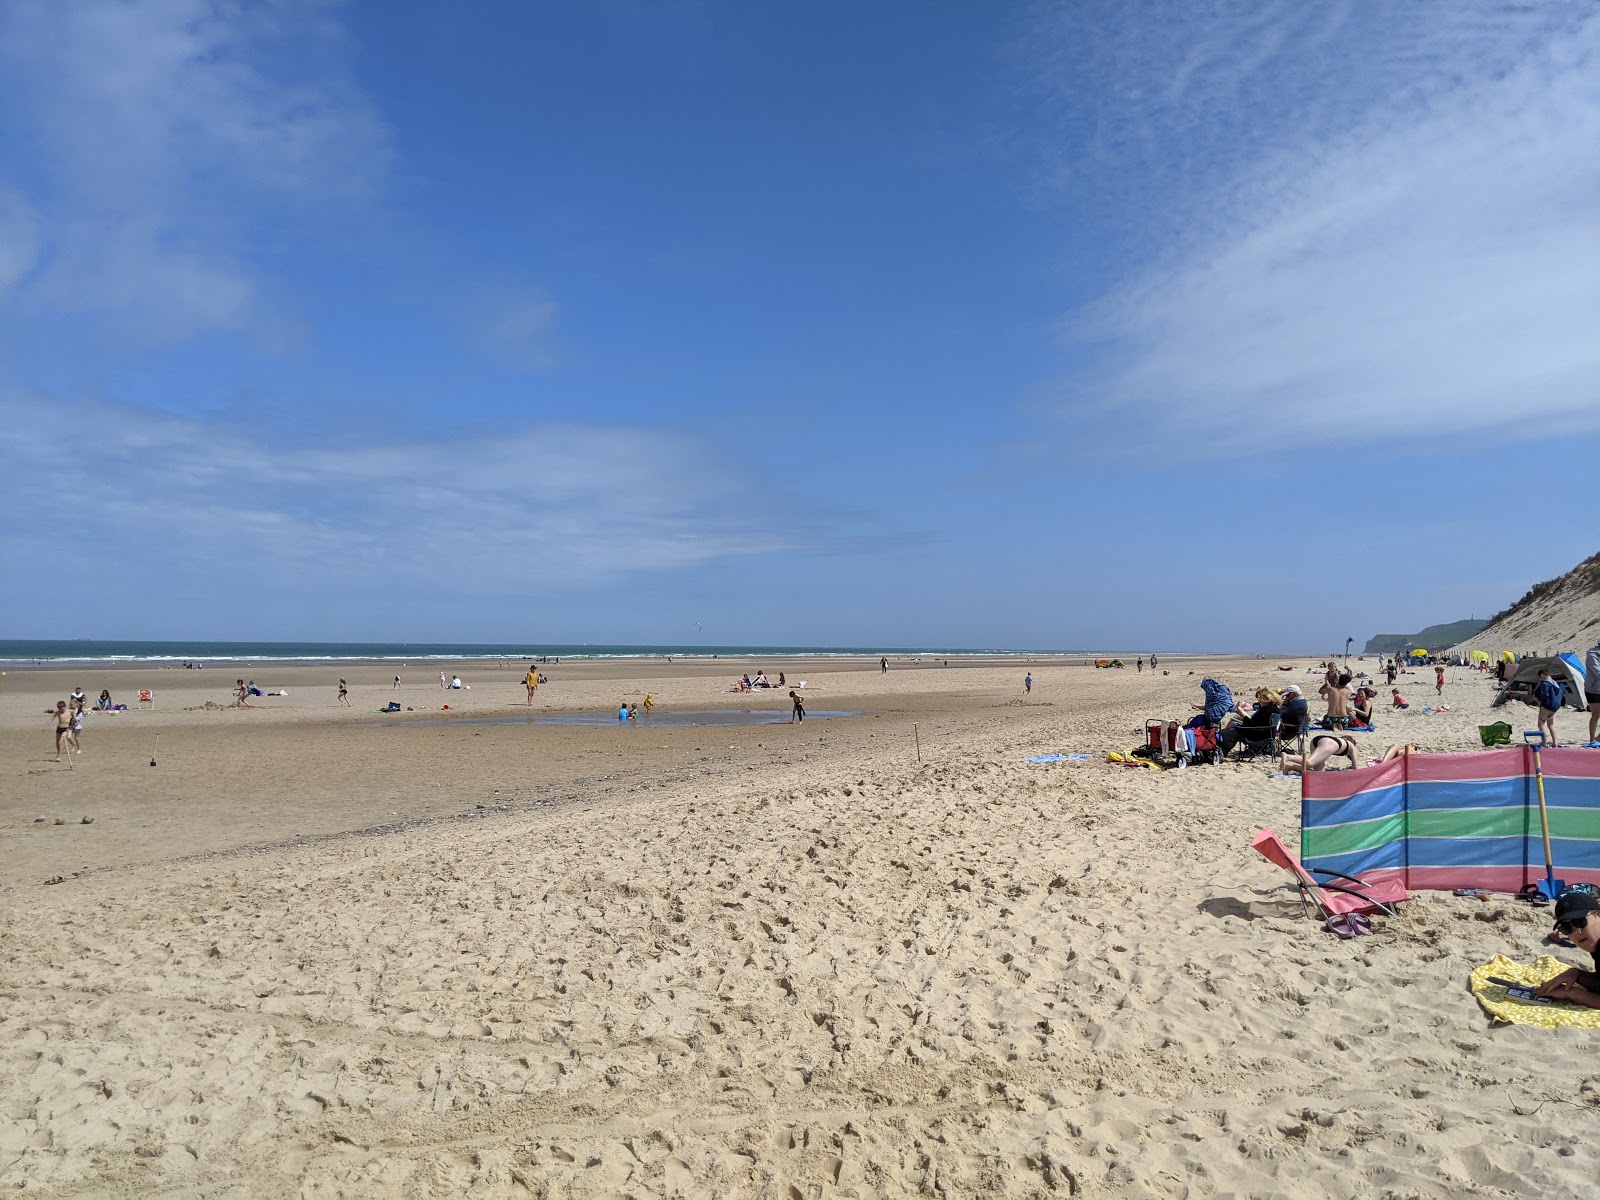 Wissant 海滩的照片 带有明亮的沙子表面